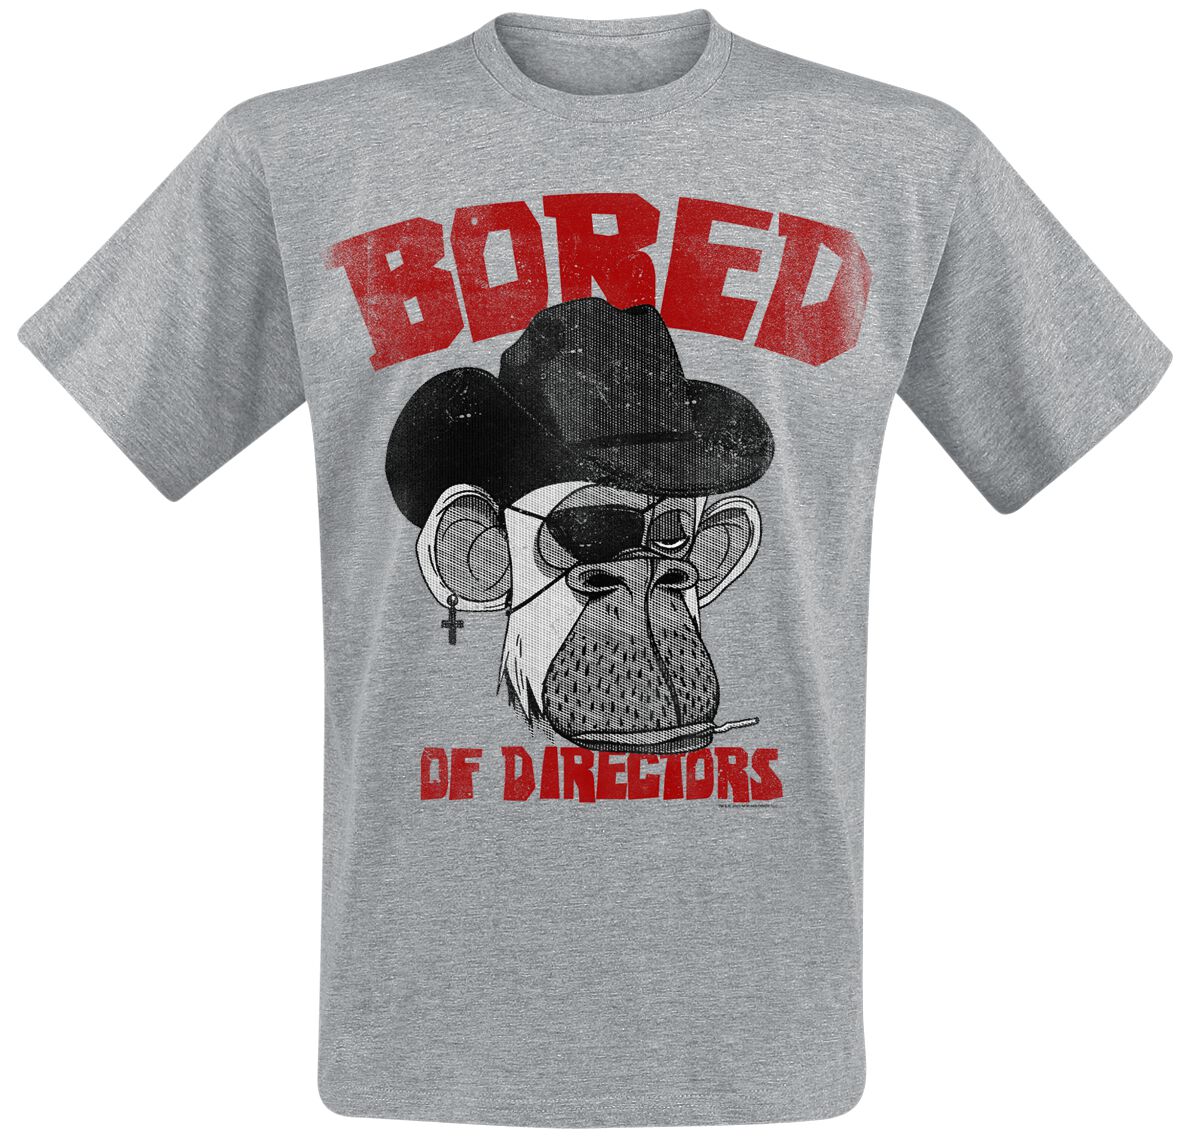 Bored Of Directors T-Shirt - Clint Apewood Vintage - S bis XXL - für Männer - Größe M - grau  - EMP exklusives Merchandise!